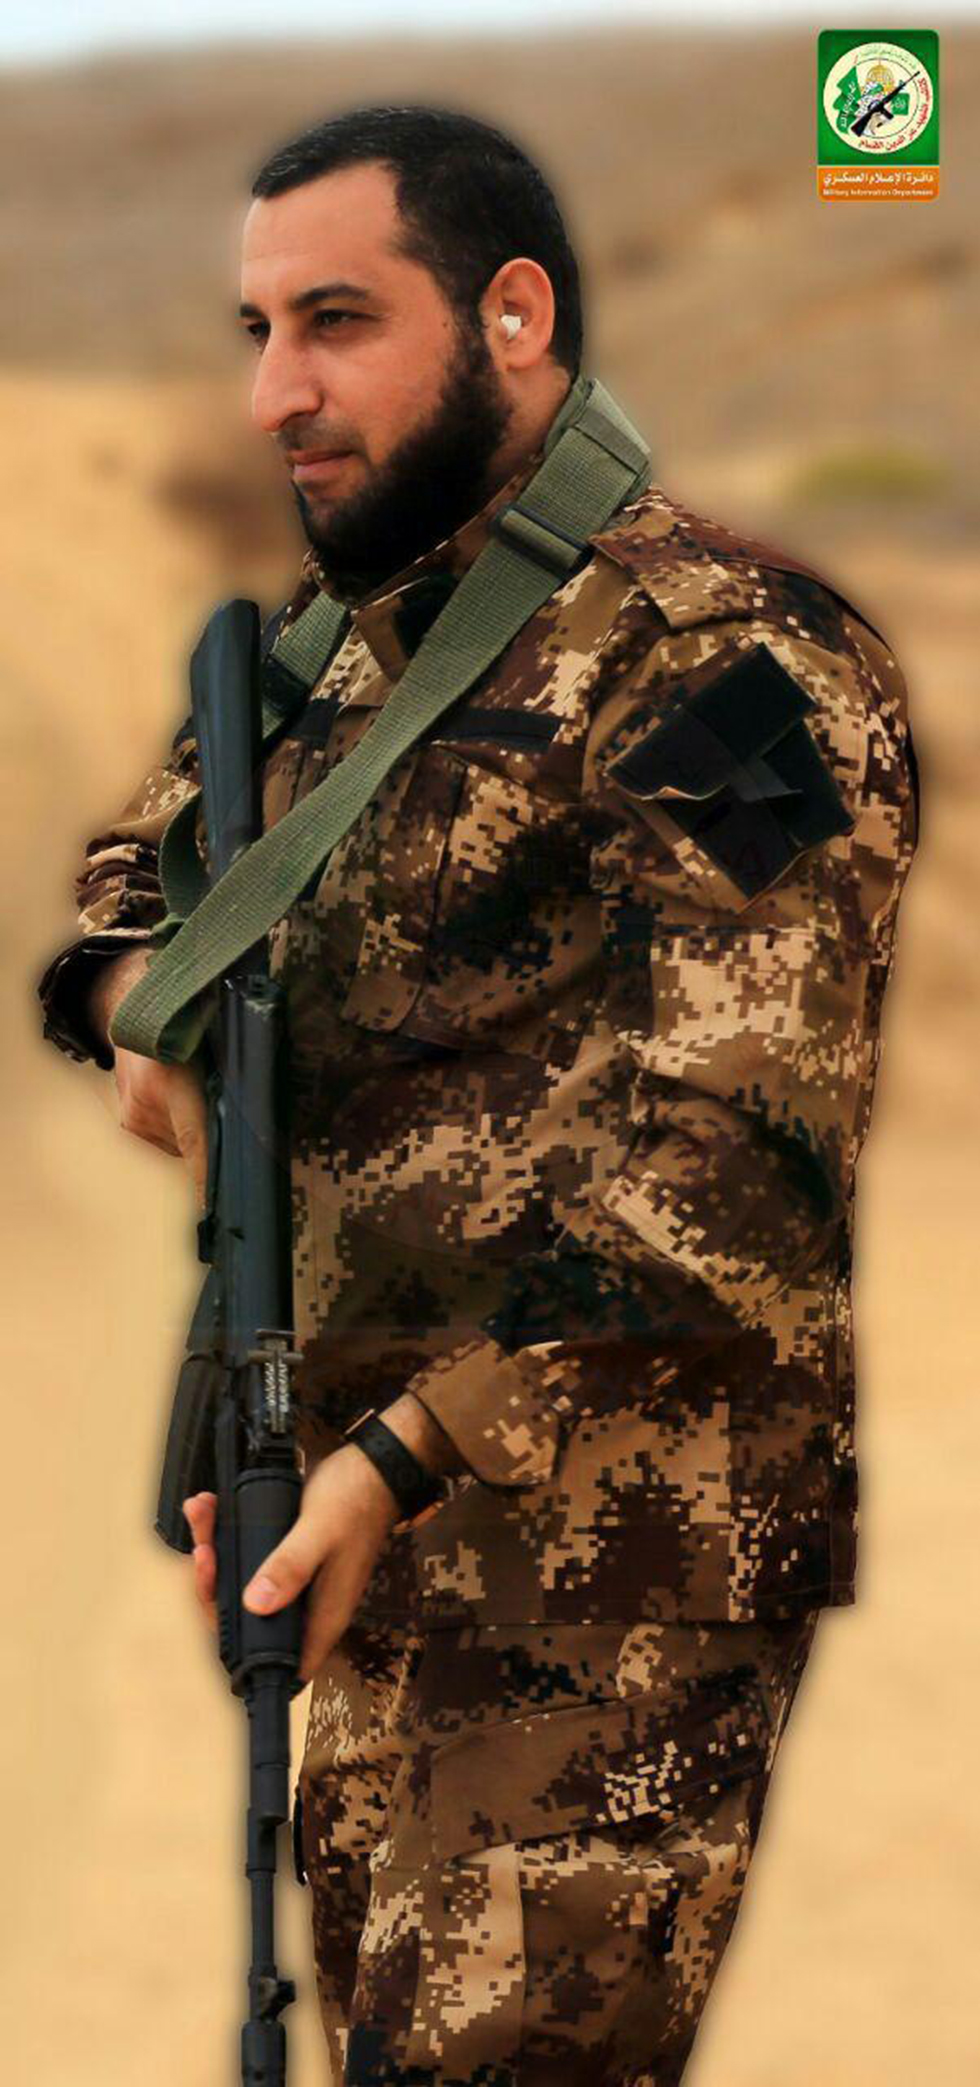 מאזן פוקהא בתמונות שפרסמה הזרוע הצבאית של חמאס  ()